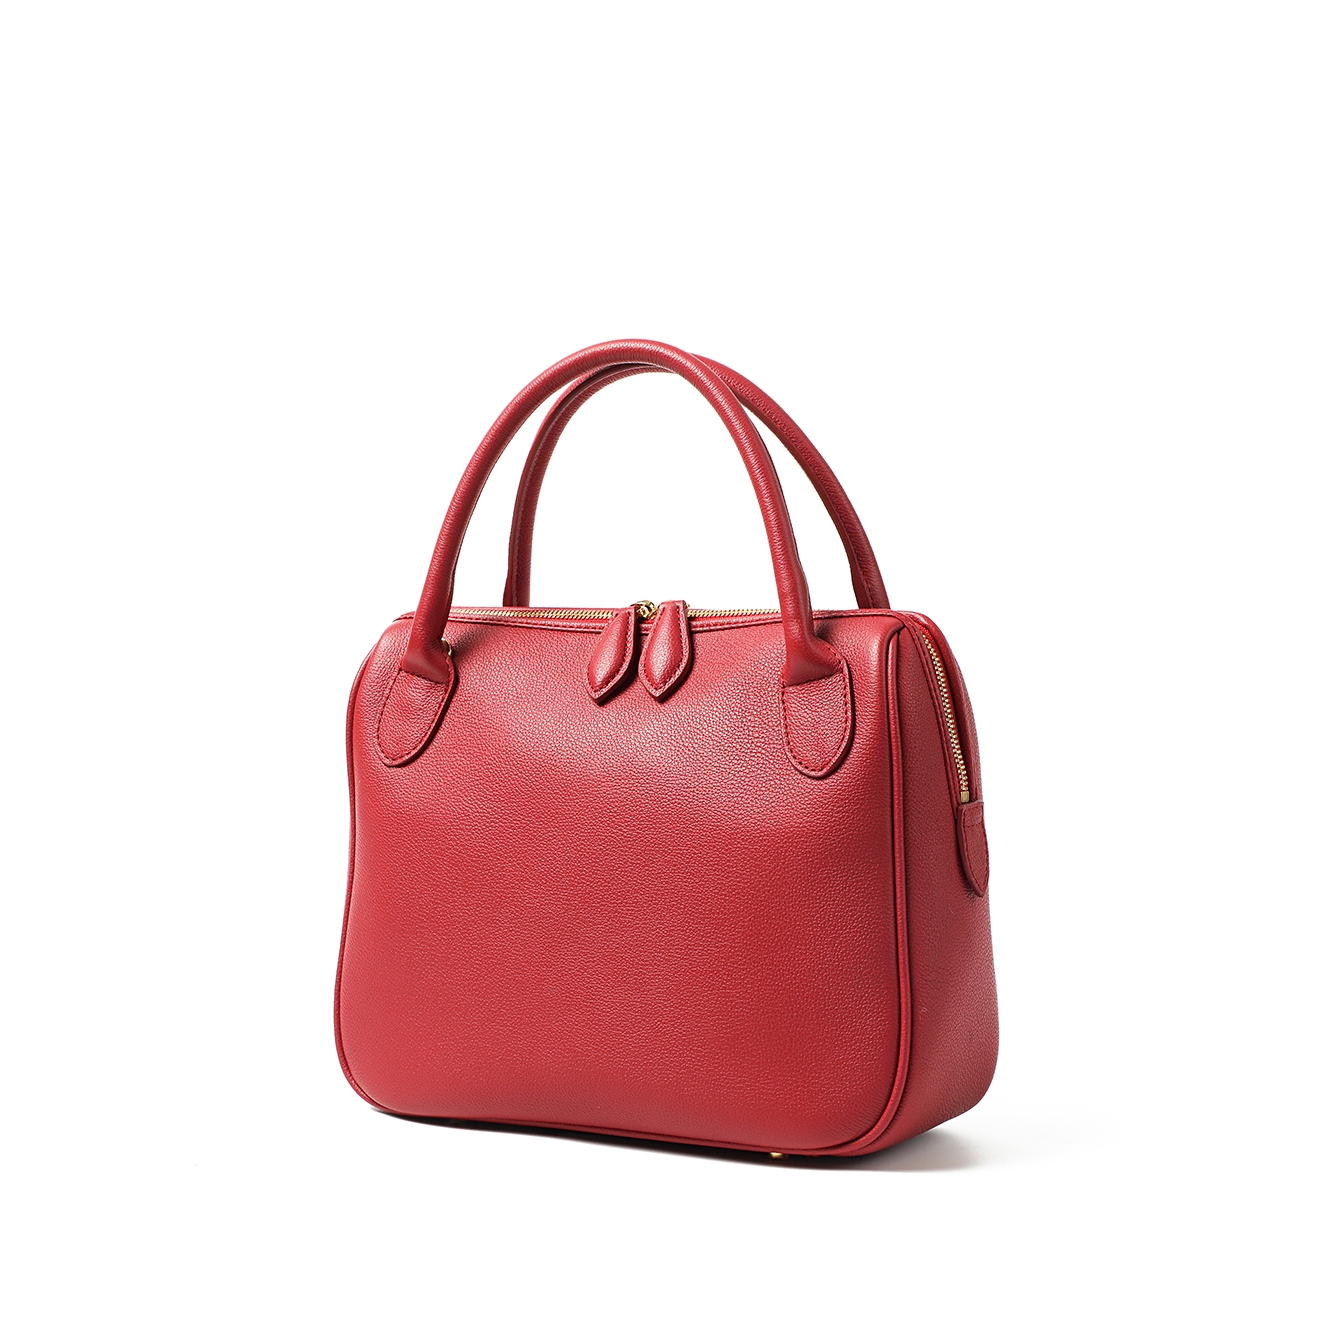 Gramercy bag _ Scarlet Red _ S